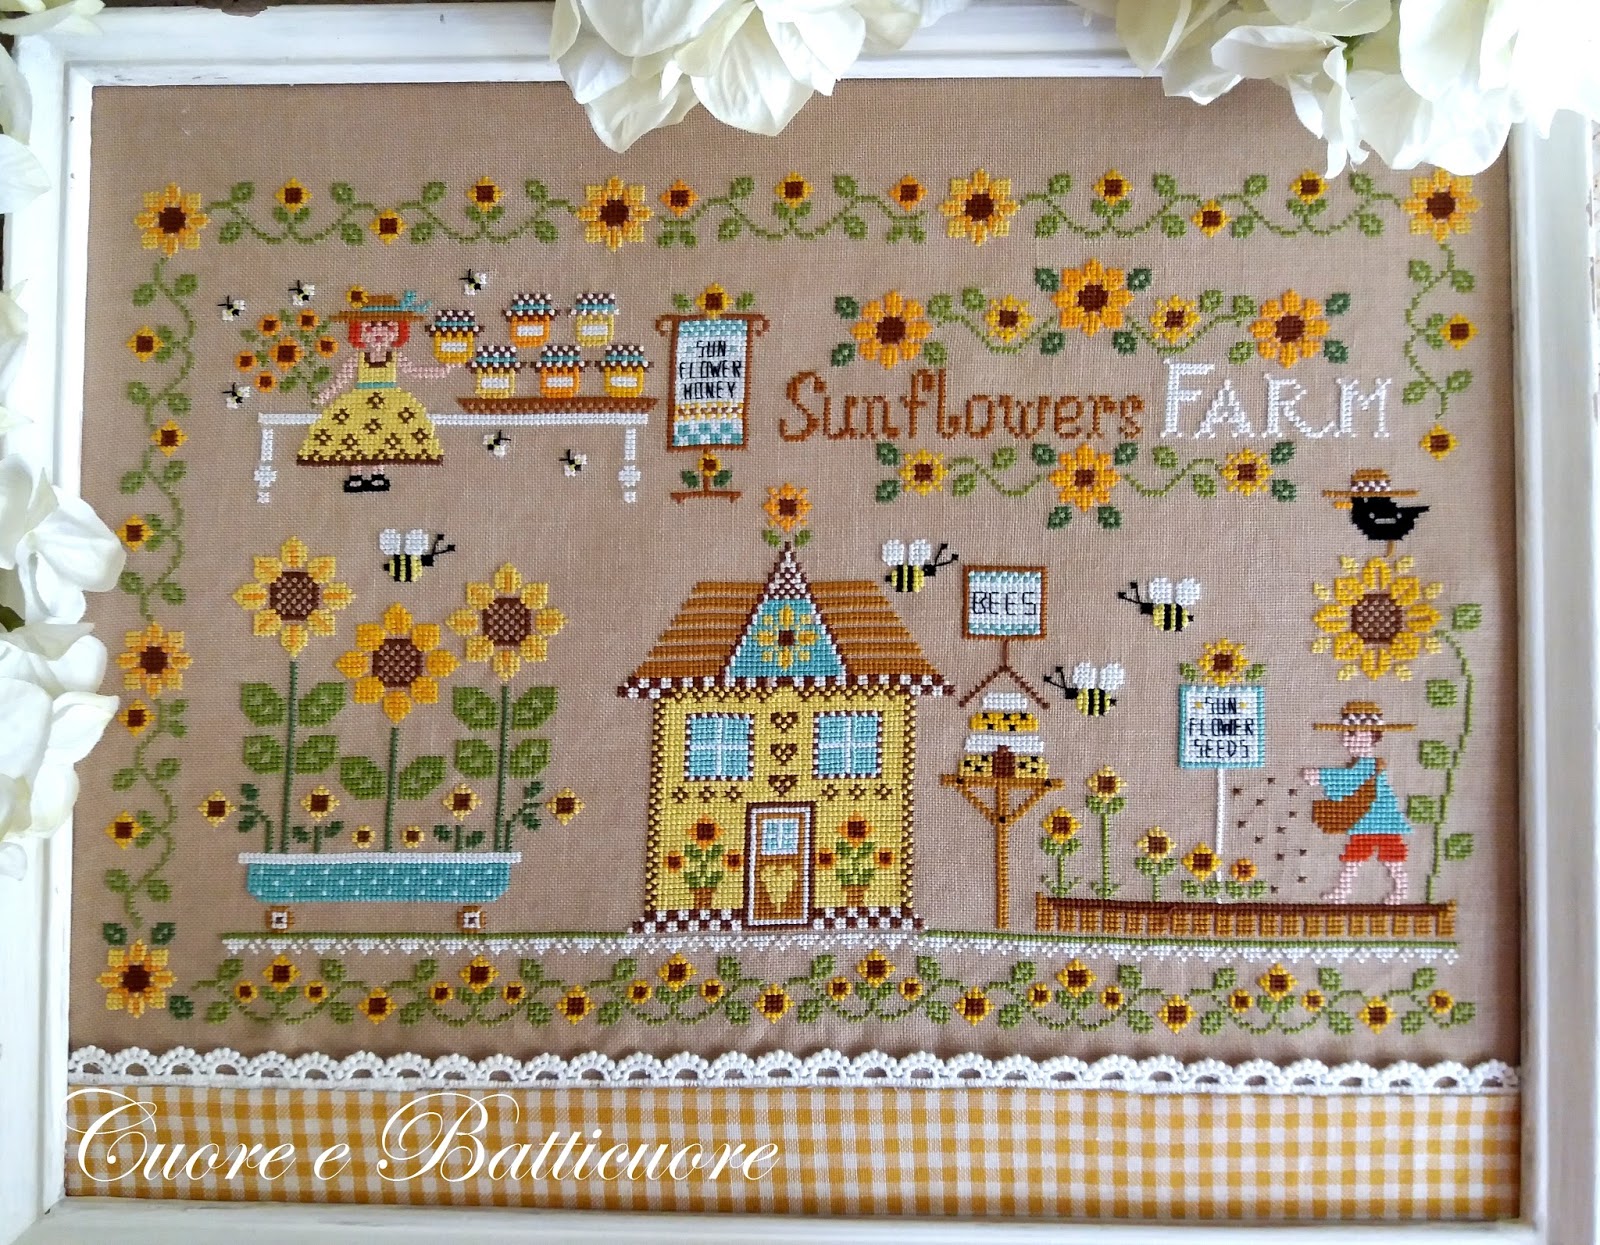 Cuore e batticuore - Sunflowers Farm